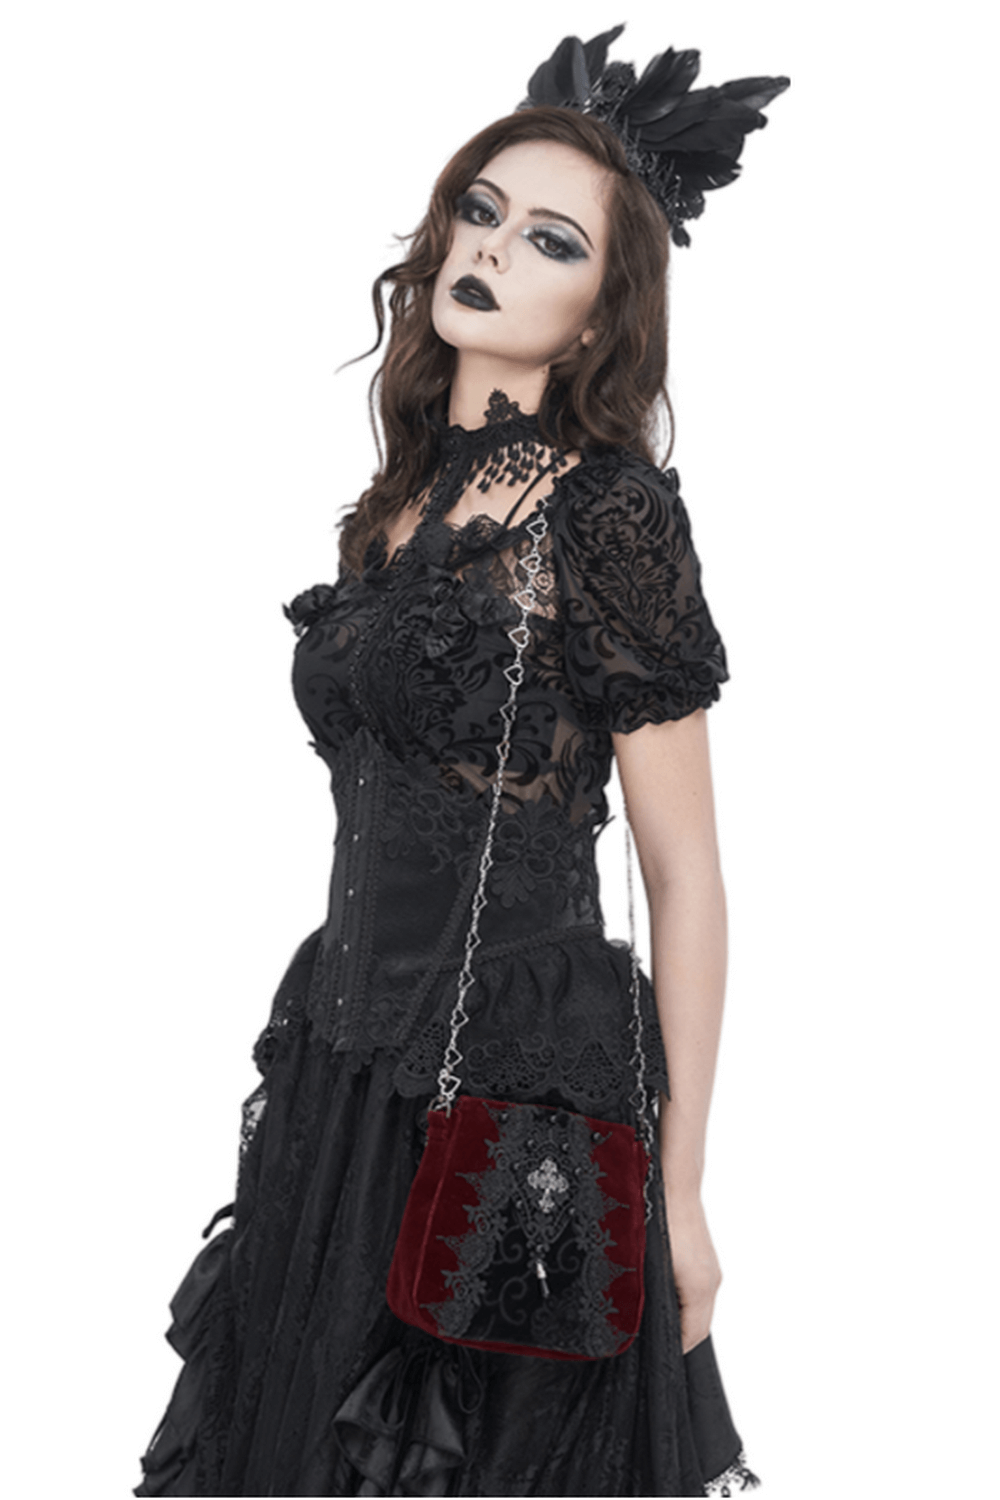 Bolso de hombro de mujer estilo gótico de encaje y terciopelo